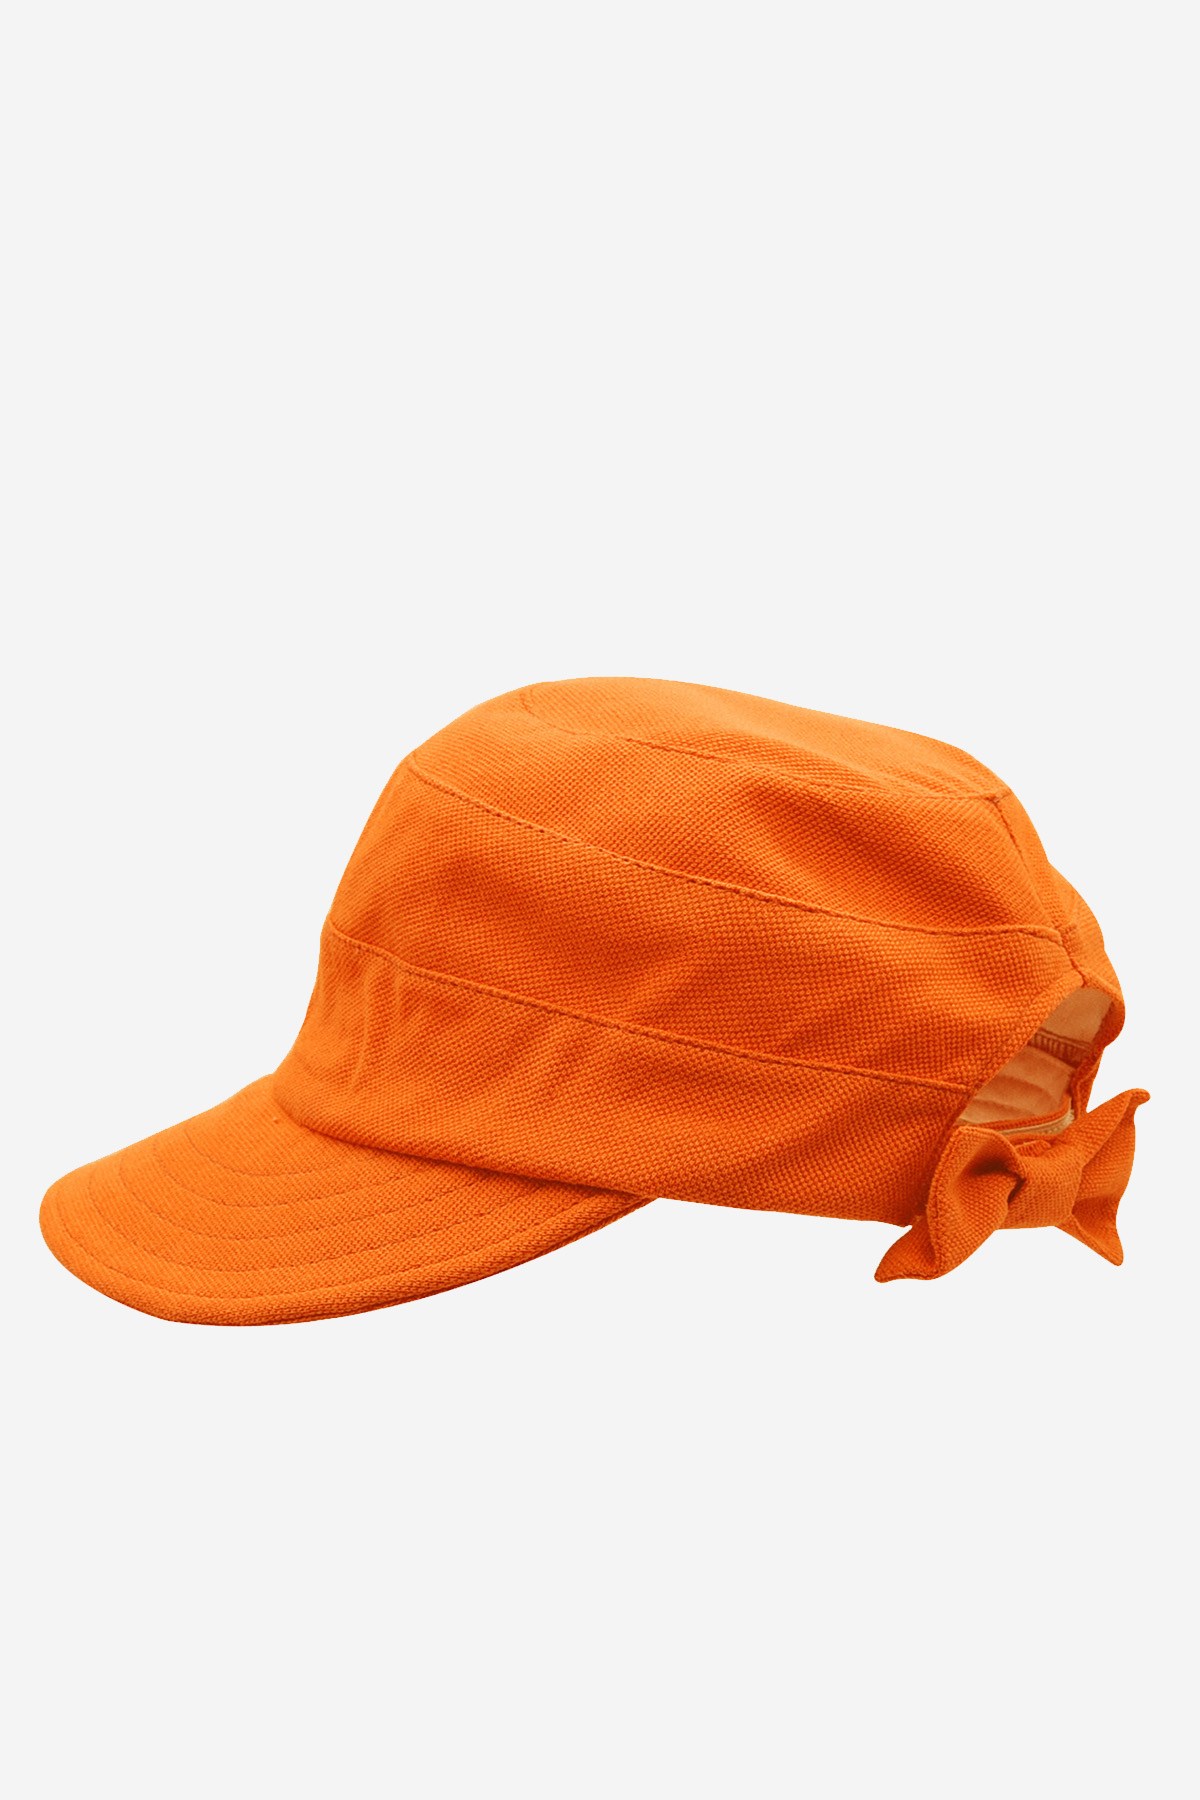 Külah Kadın Güneş Koruyucu Geniş Siperli Turuncu Şapka KLH7173